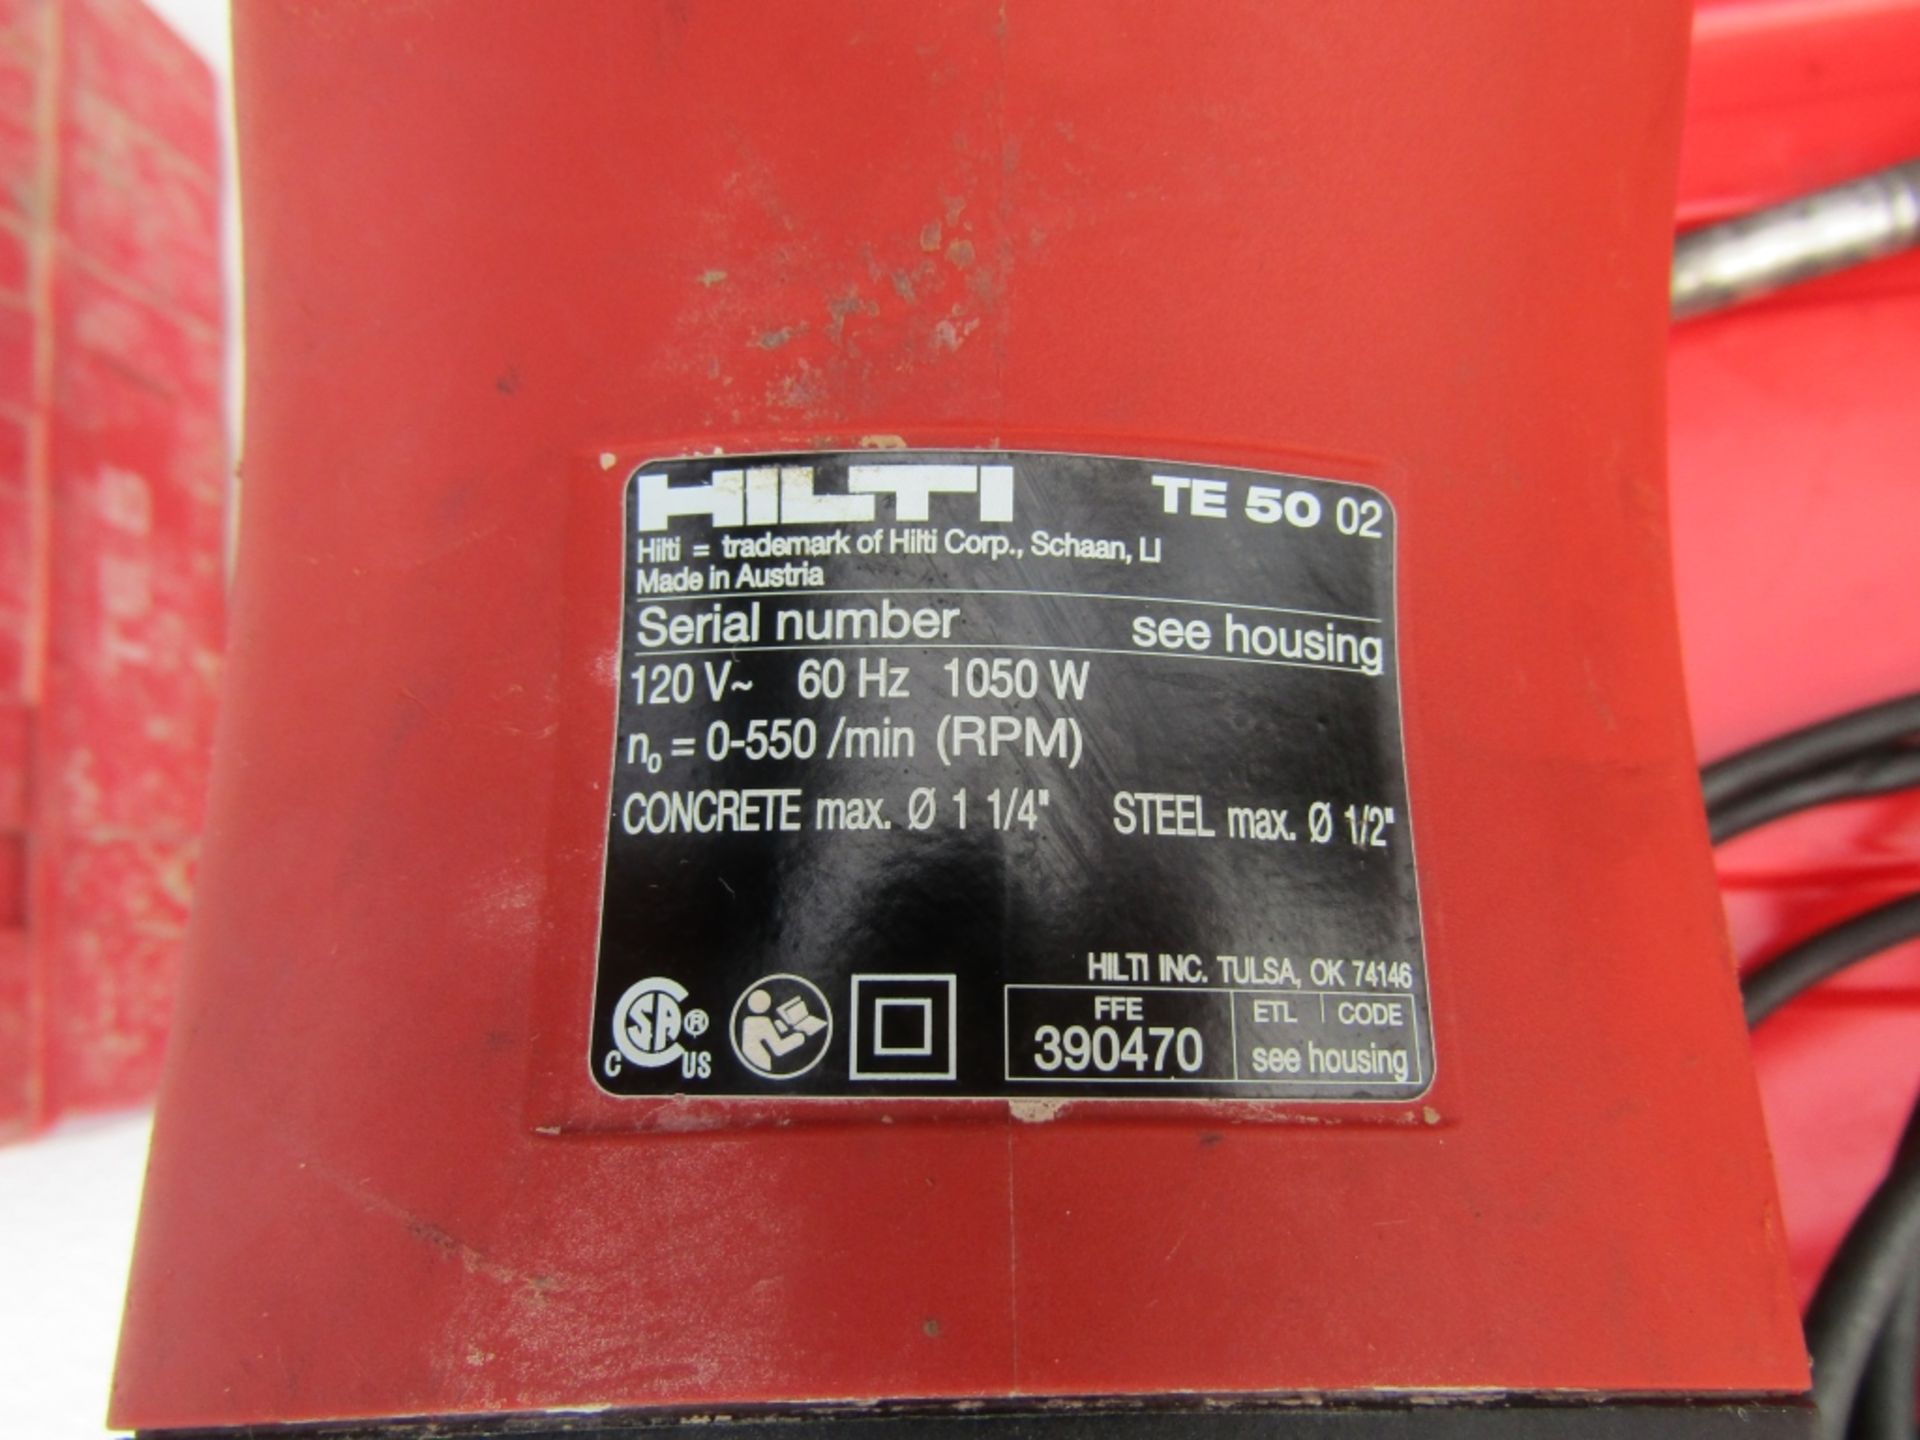 Hilti T# 50 Hammer Drill, Concrete max 1 1/4" & Steel max 1/2", 120 Volt, - Image 2 of 2